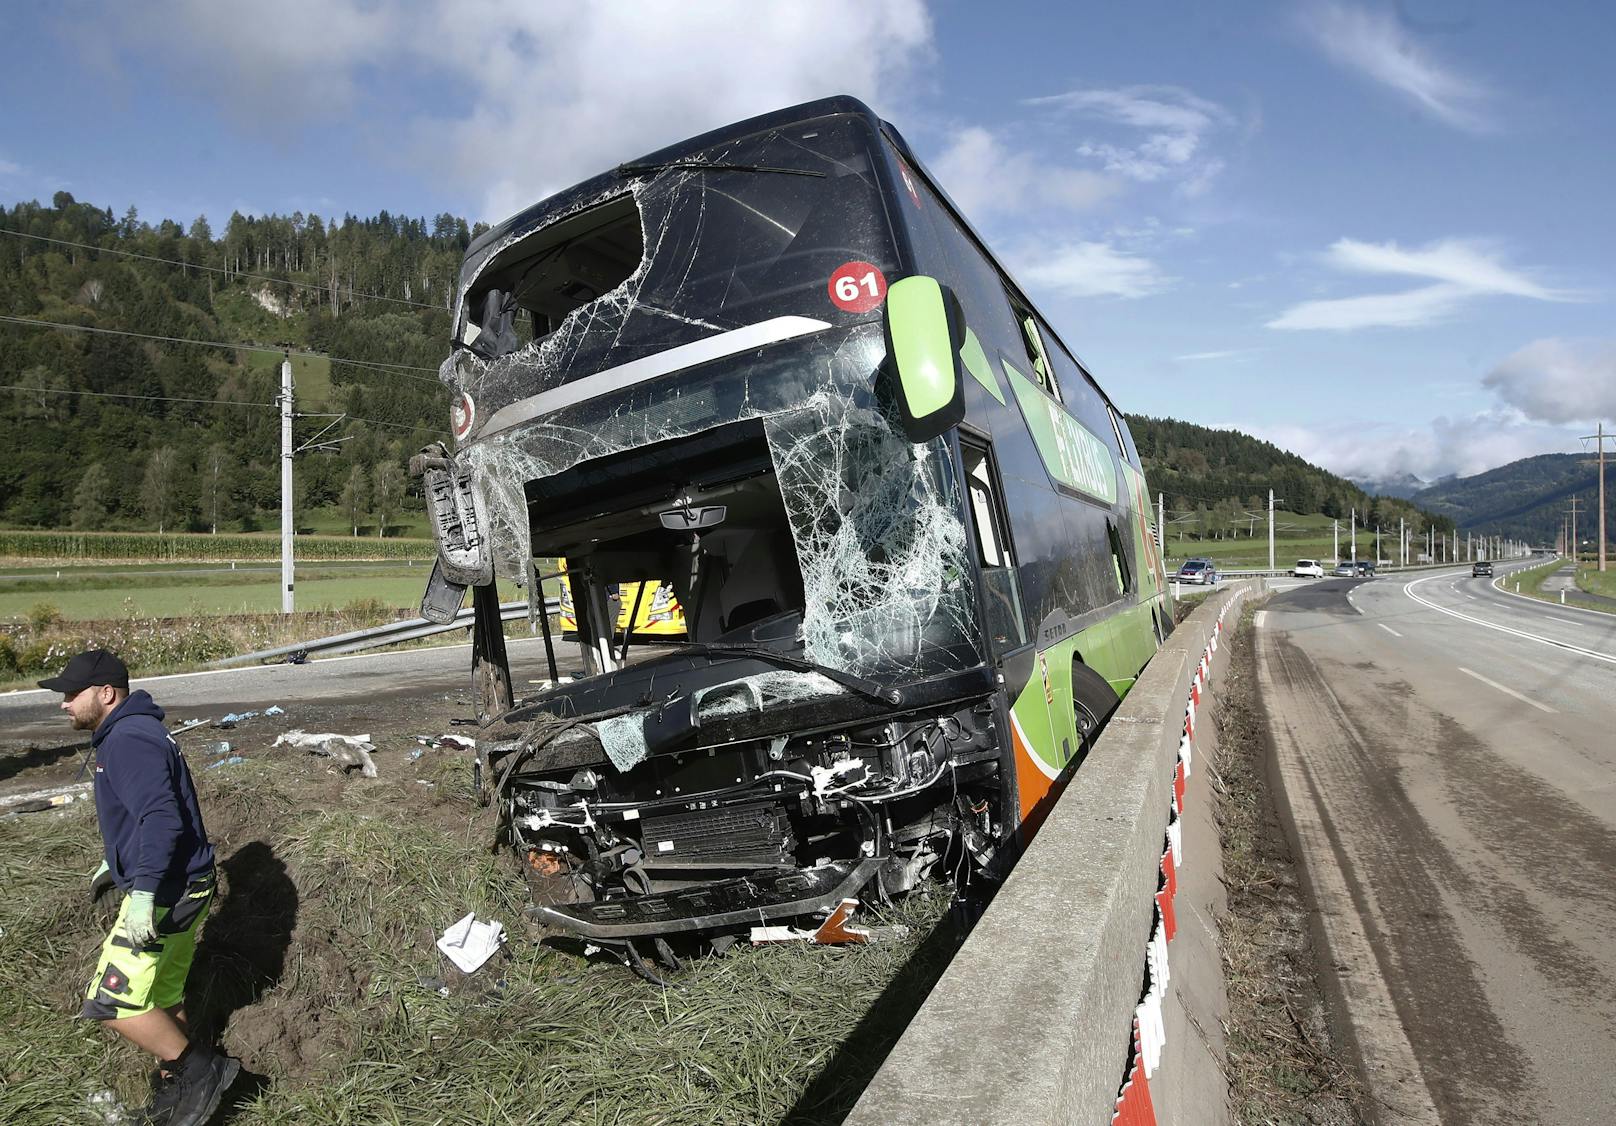 "Es haben sich 44 Personen in dem Bus befunden, davon zwei Lenker. Einige Personen wurden zum Teil verletzt und wurden ins Krankenhaus Friesach oder Klinikum Klagenfurt verbracht", erklärte Lisa Sandrieser, Sprecherin der Polizei, gegenüber <a href="https://www.5min.at/202309708728/toedlicher-ausgang-frau-bei-busunfall-ums-leben-gekommen/" target="_blank">"5 Minuten"</a>.